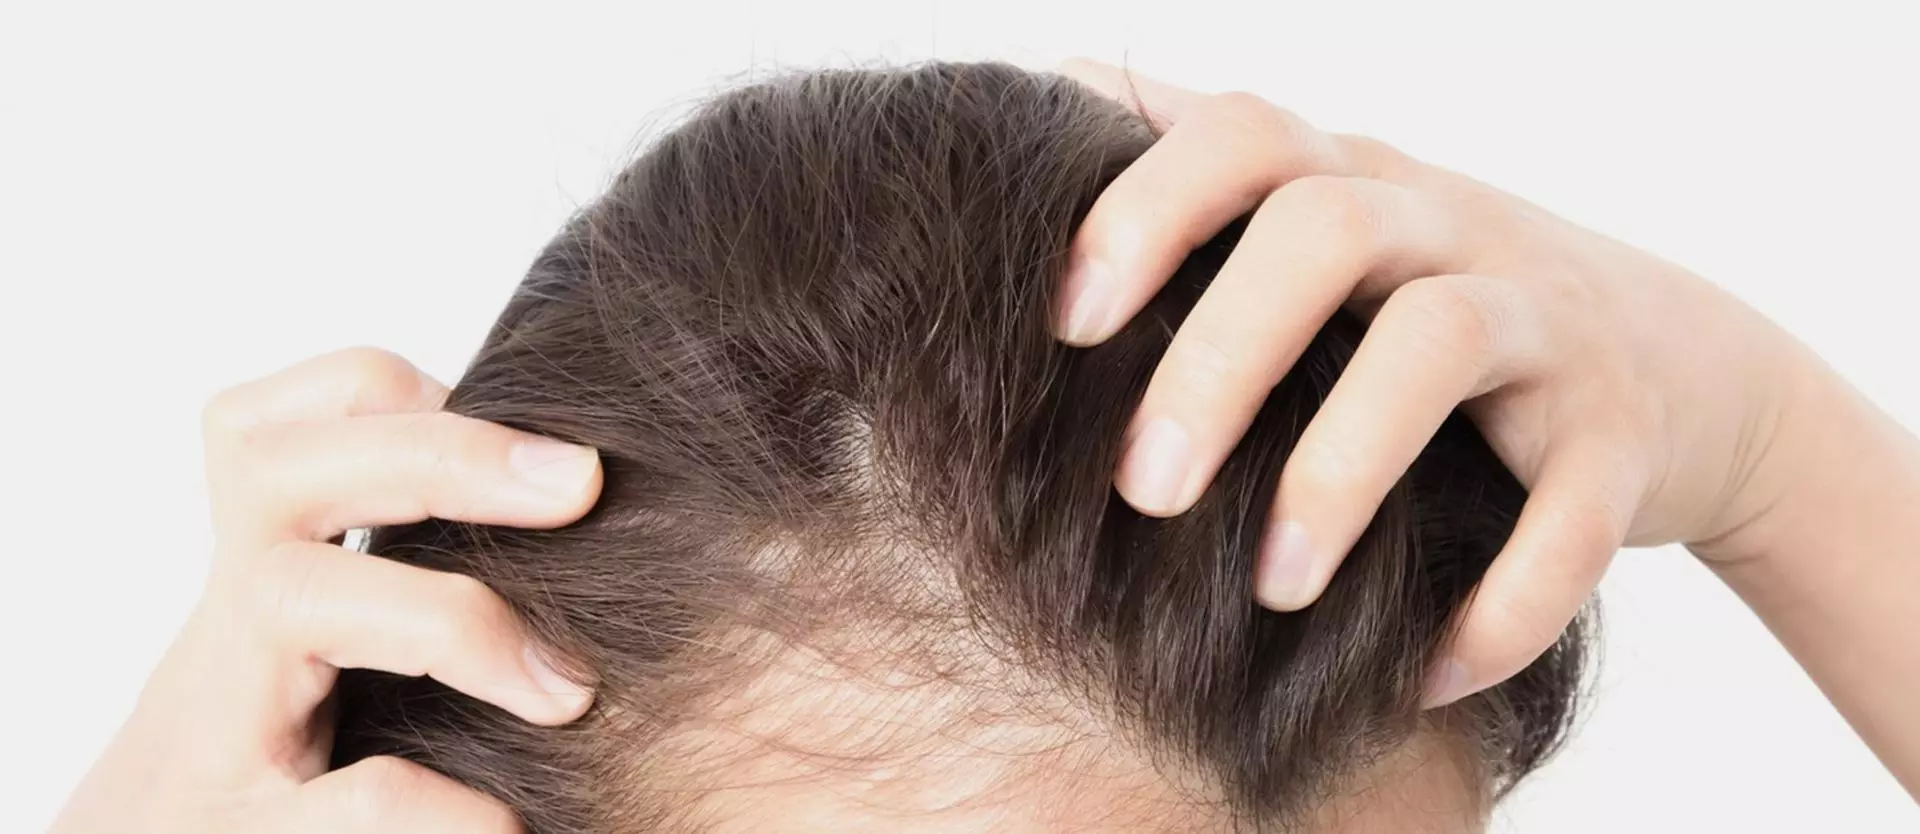 5 Reasons Women Experience Hair Loss